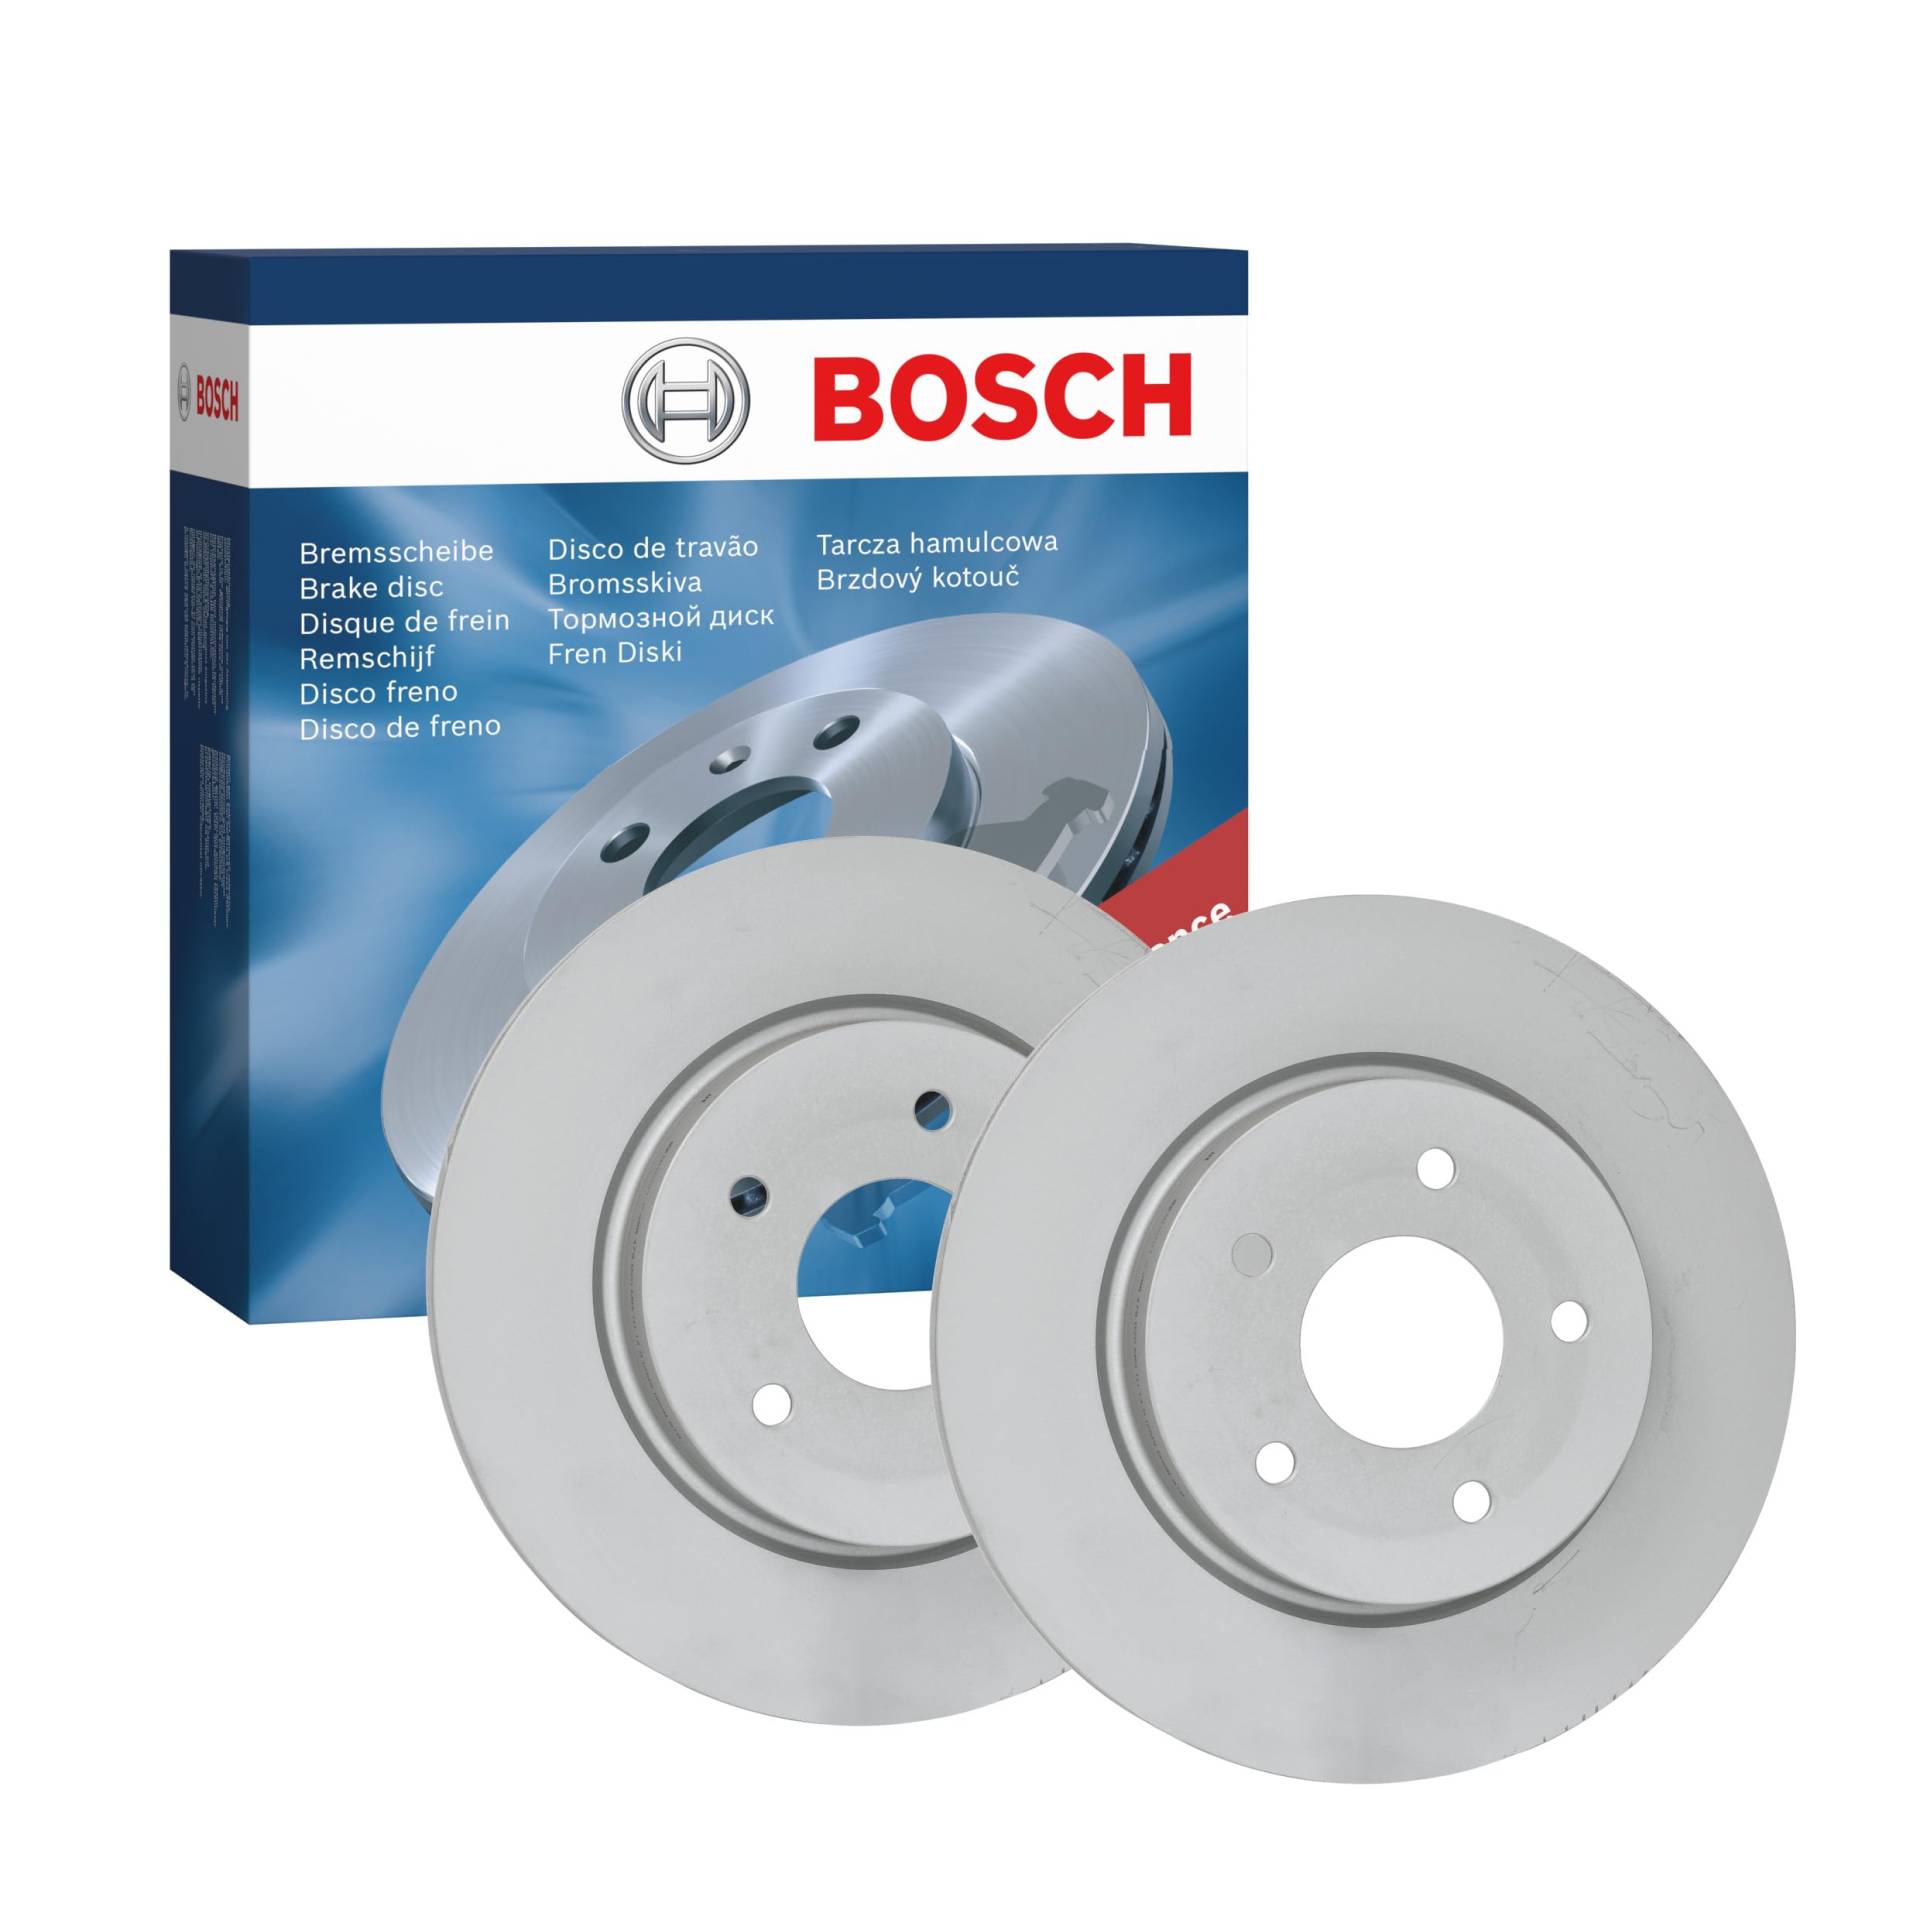 Bosch BD2441 Bremsscheiben - Hinterachse - ECE-R90 Zertifizierung - zwei Bremsscheiben pro Set von Bosch Automotive